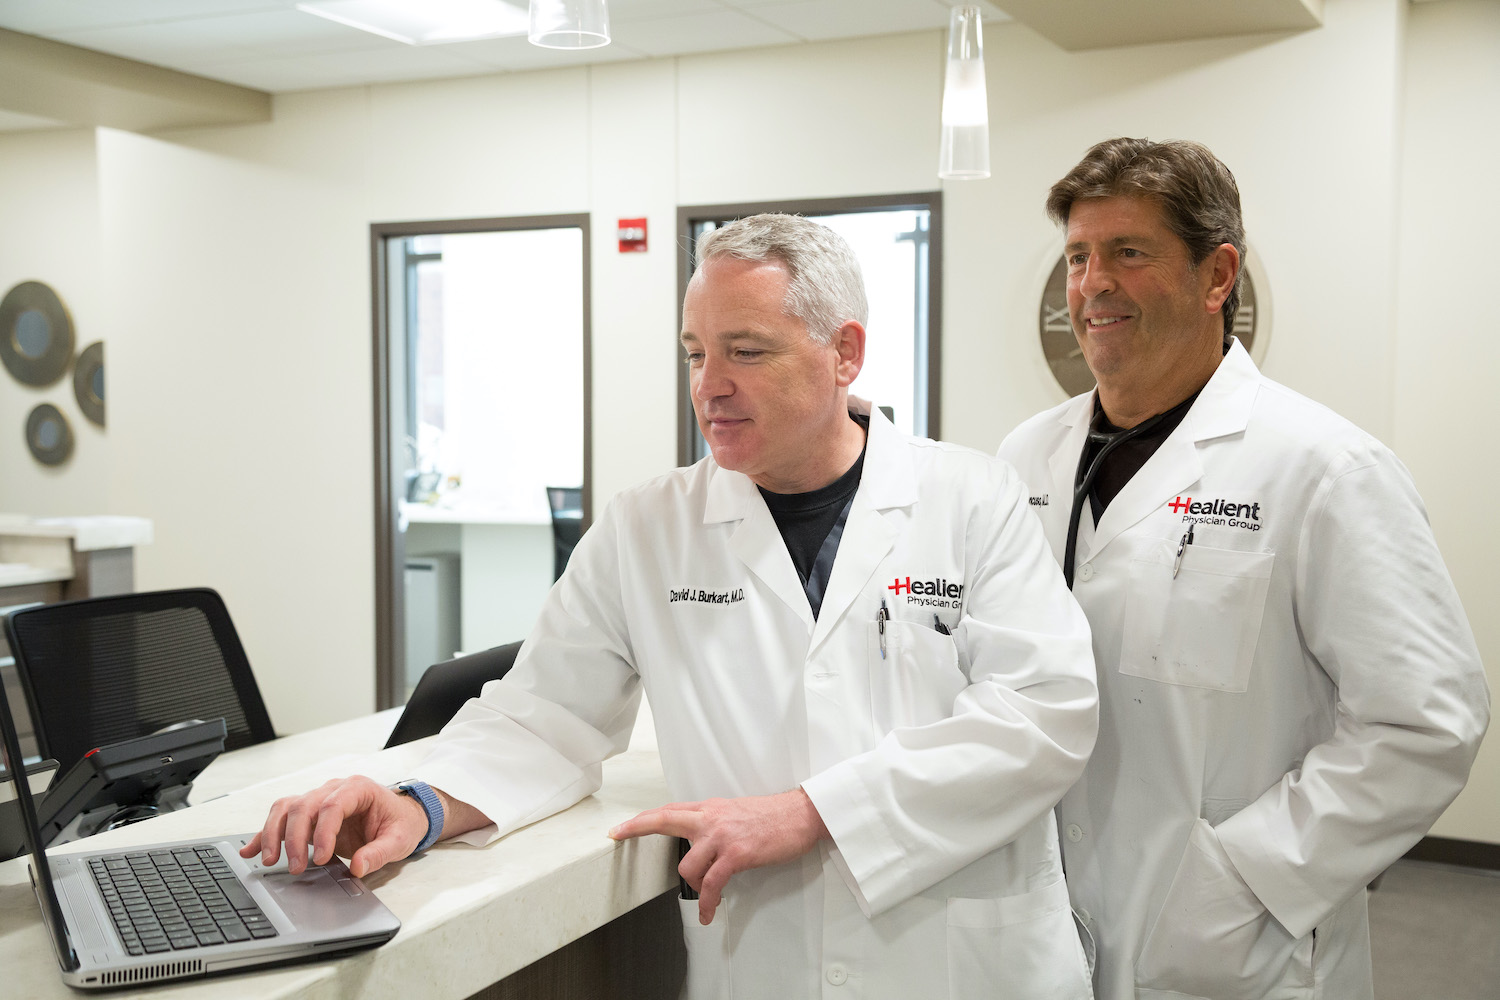 Healient Doctors discussing a patient over a laptop